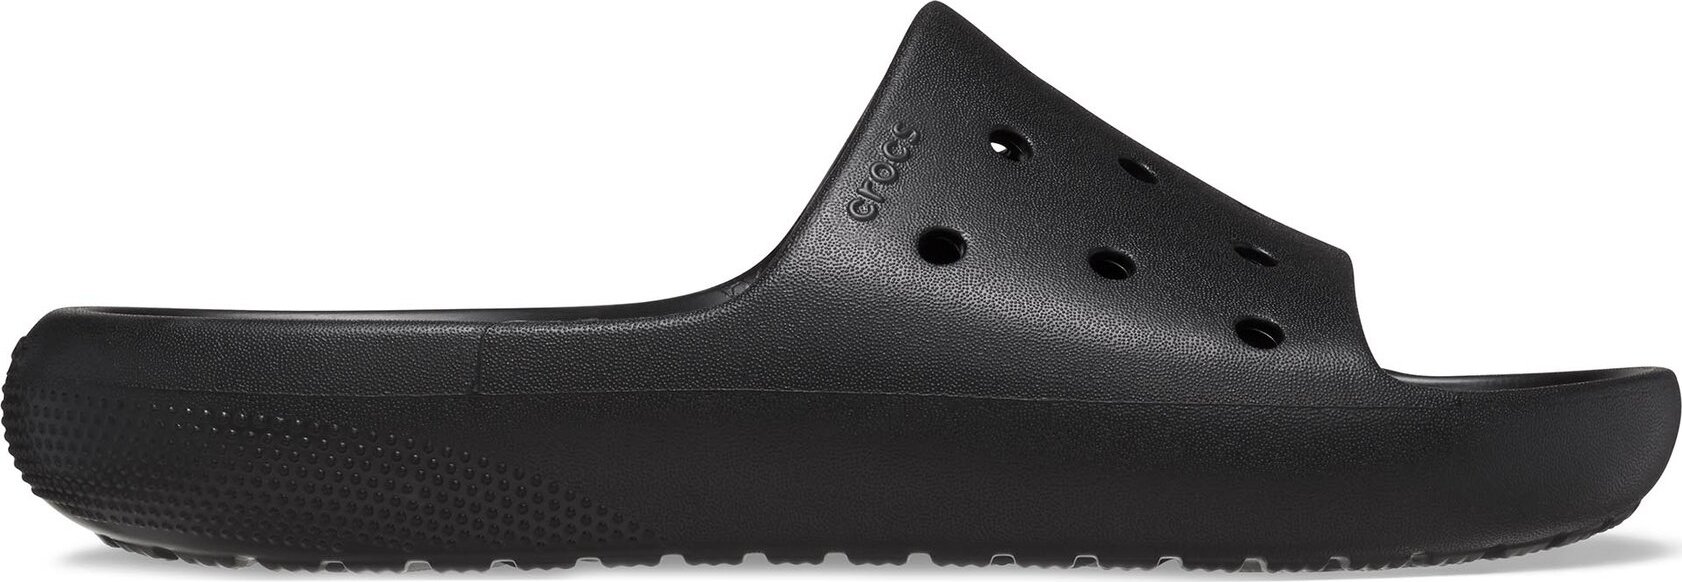 Nazouváky Crocs Classic Slide V 209401 Black 001